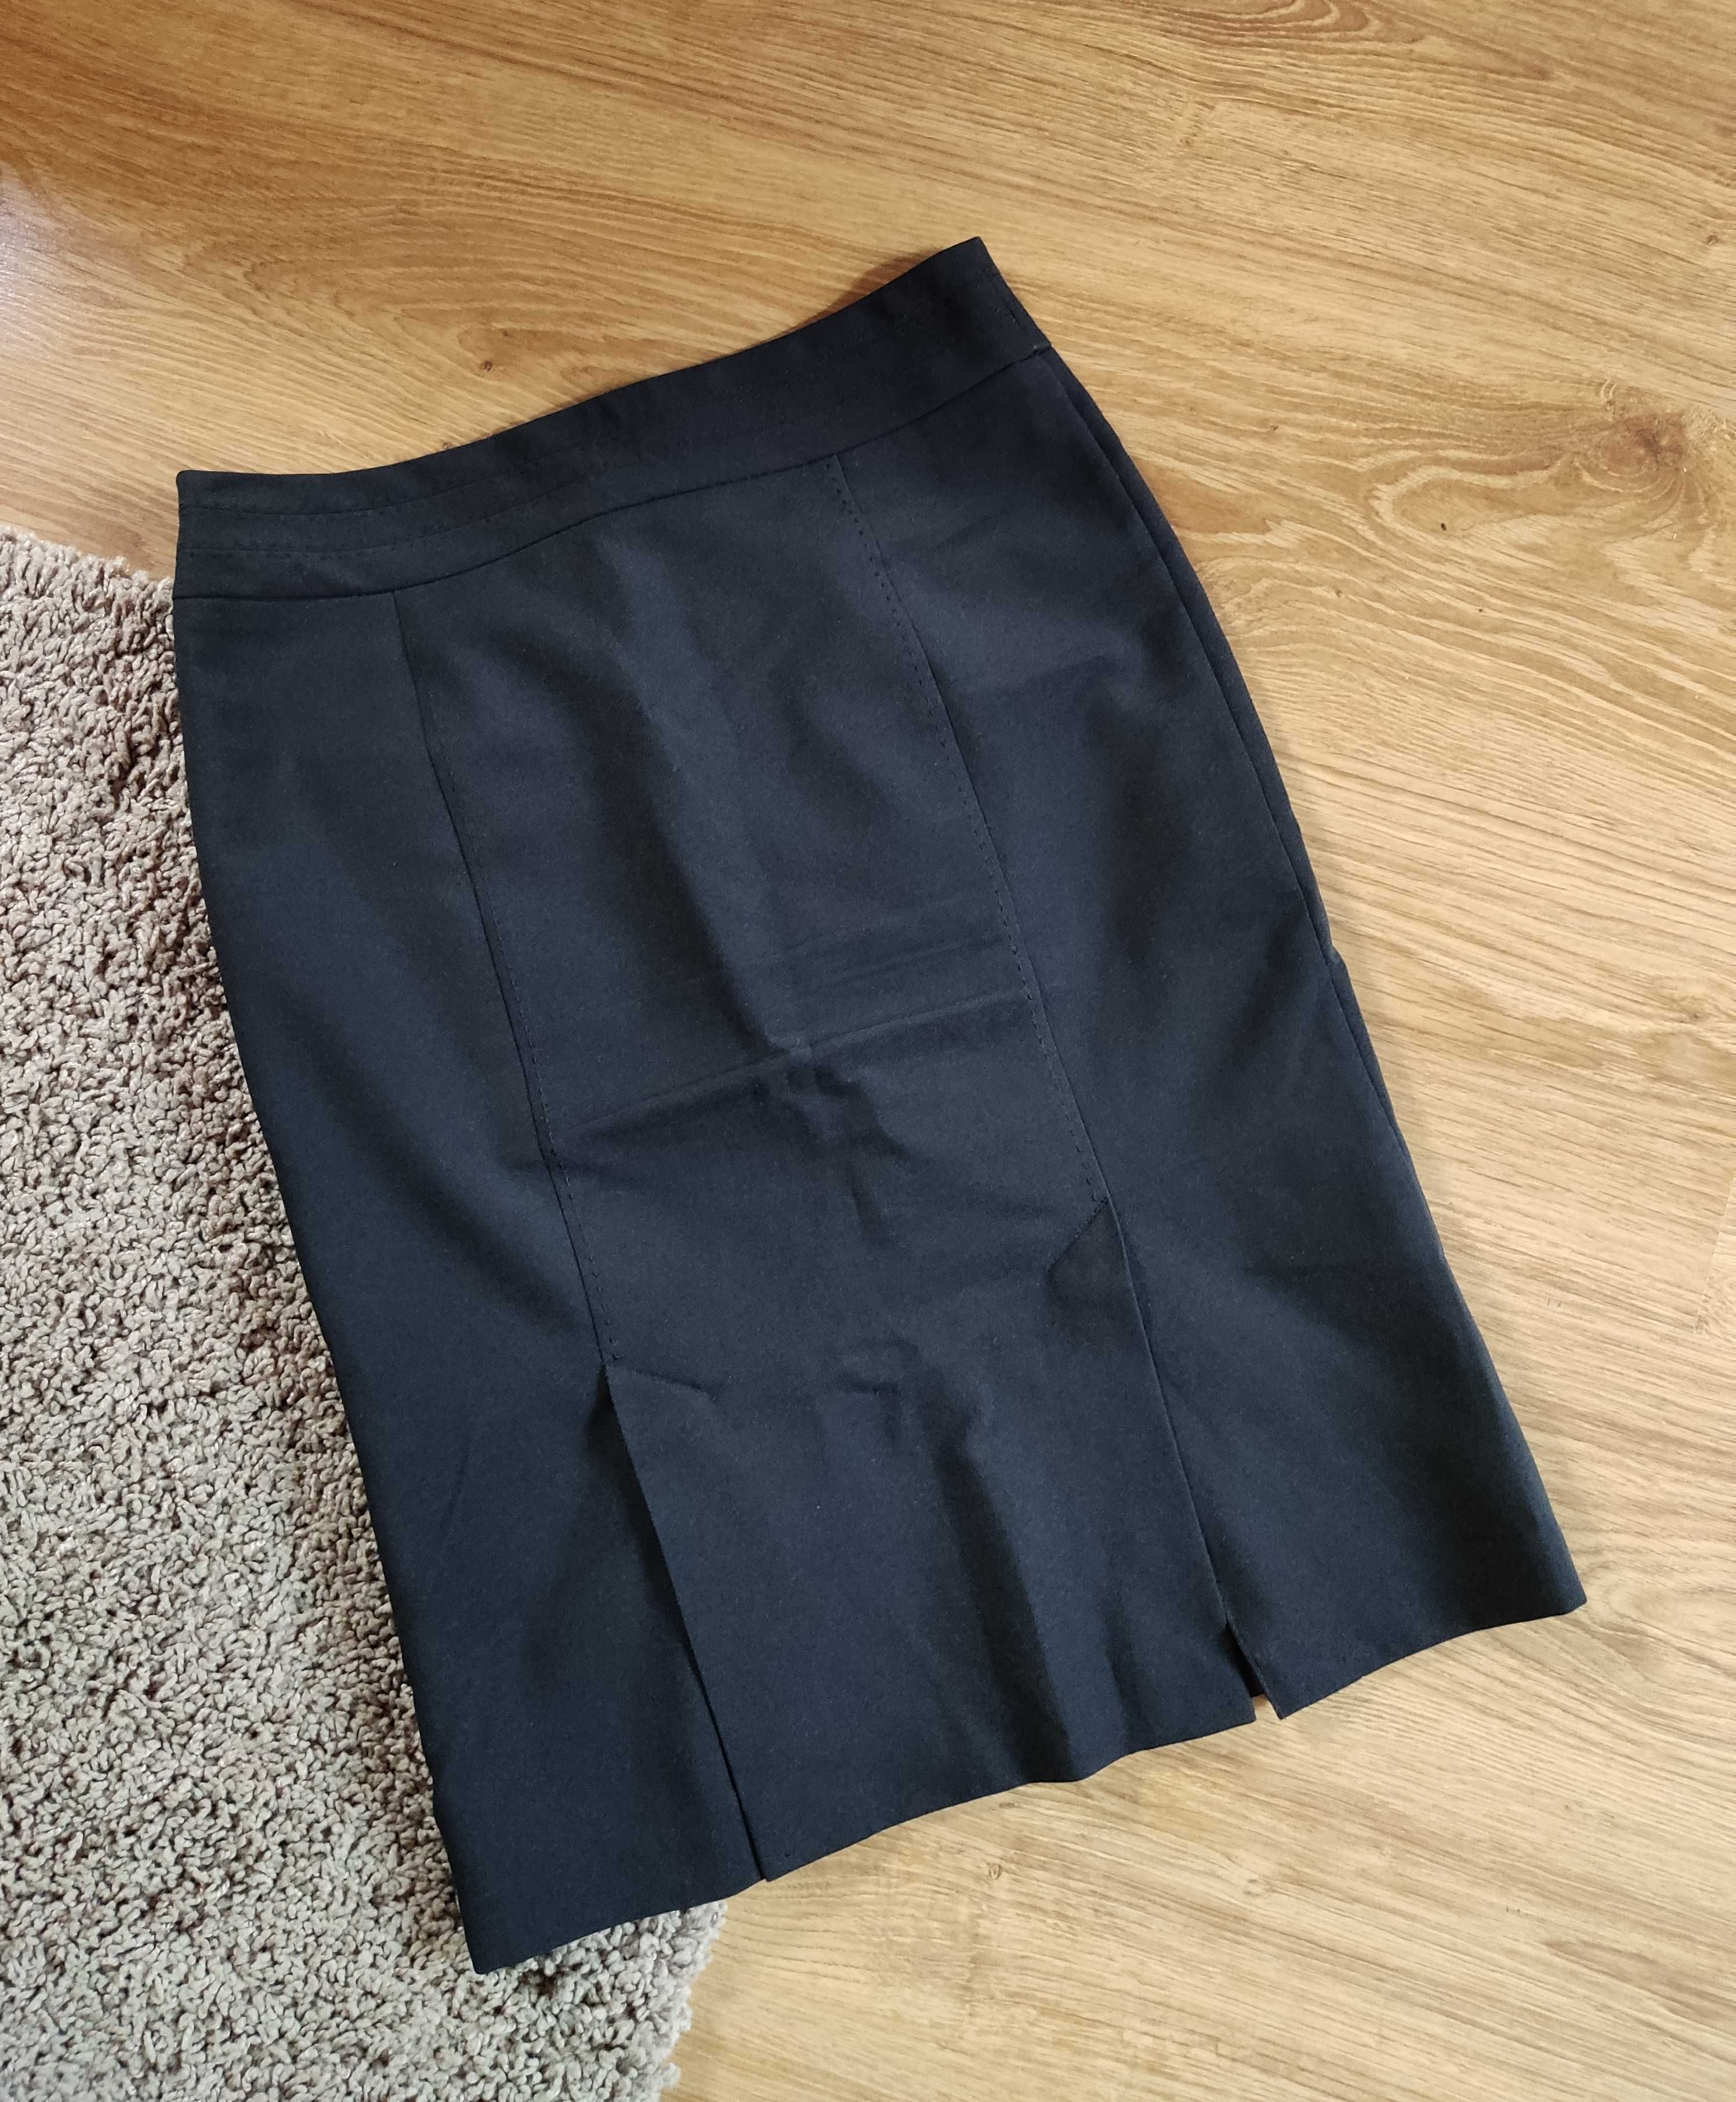 Spódnica czarna elegancka ołówkowa taliowana z rozporkami w kolano